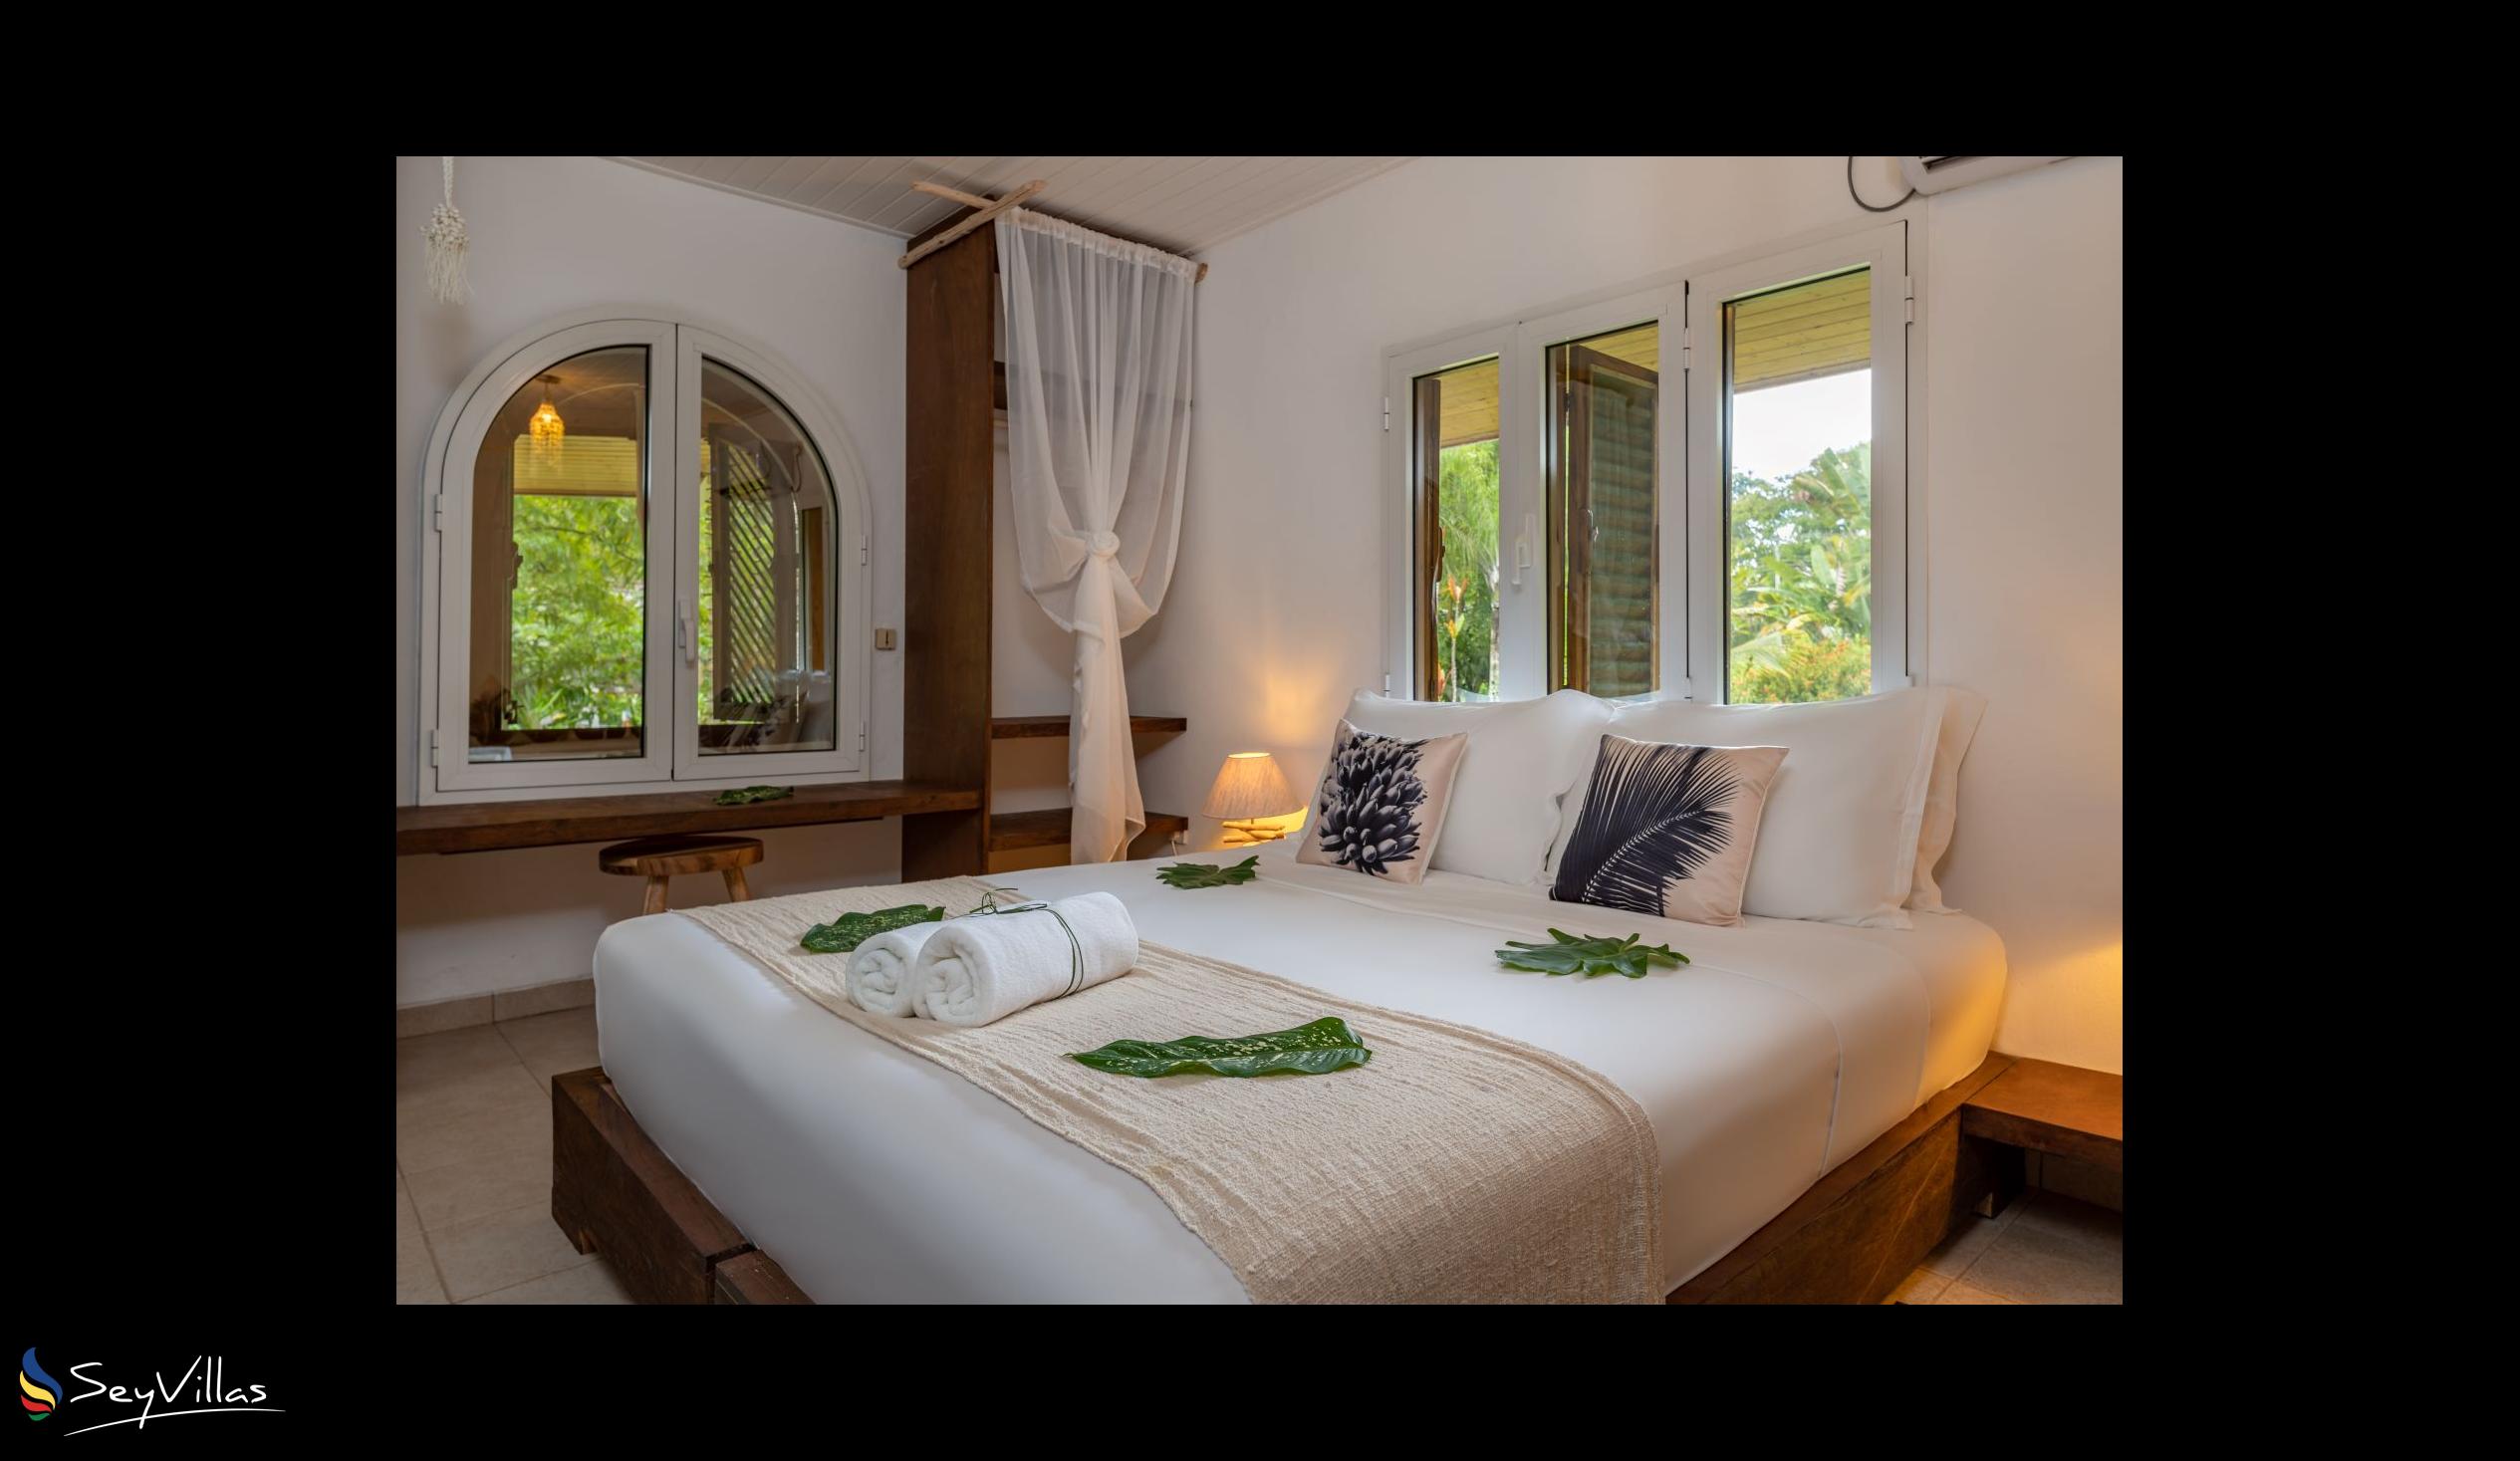 Photo 60: Bliss Hotel Praslin - Eden Garden - Charm Room - Praslin (Seychelles)